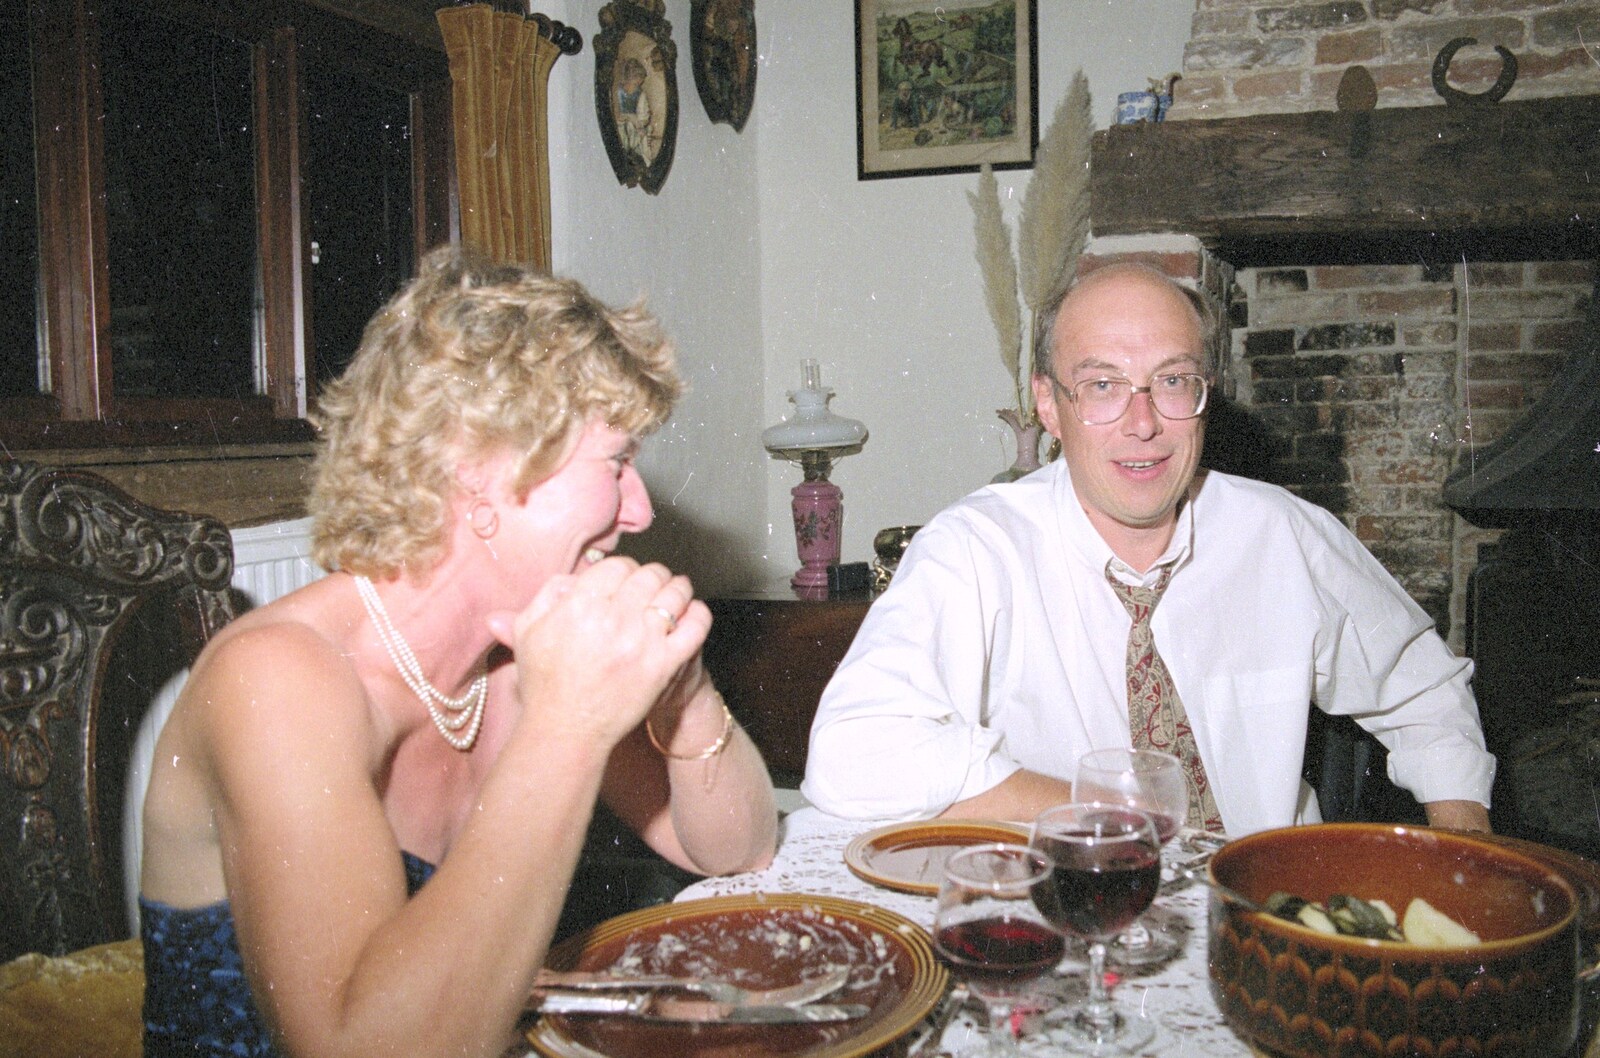 Brenda and John from Nosher's Dinner Party, Stuston, Suffolk - 14th September 1991